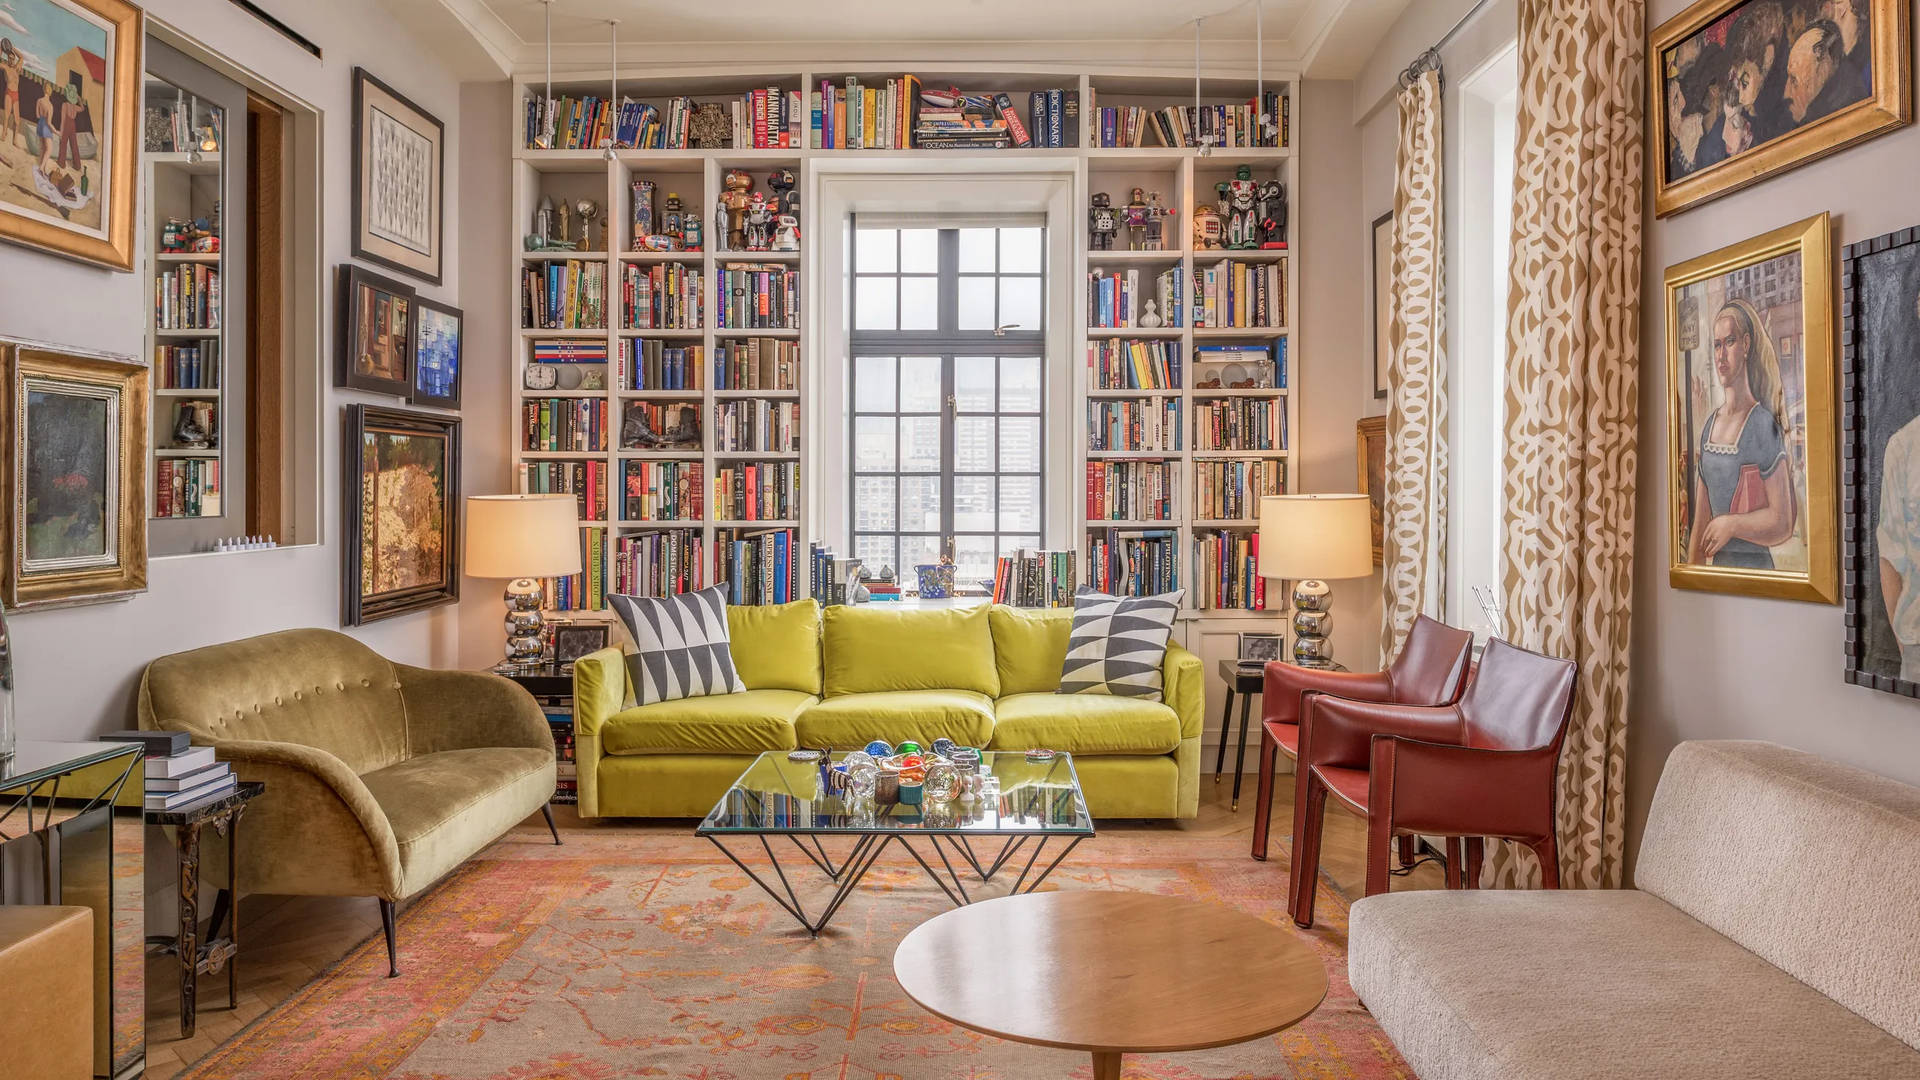 Stue med bøger og globus Wallpaper